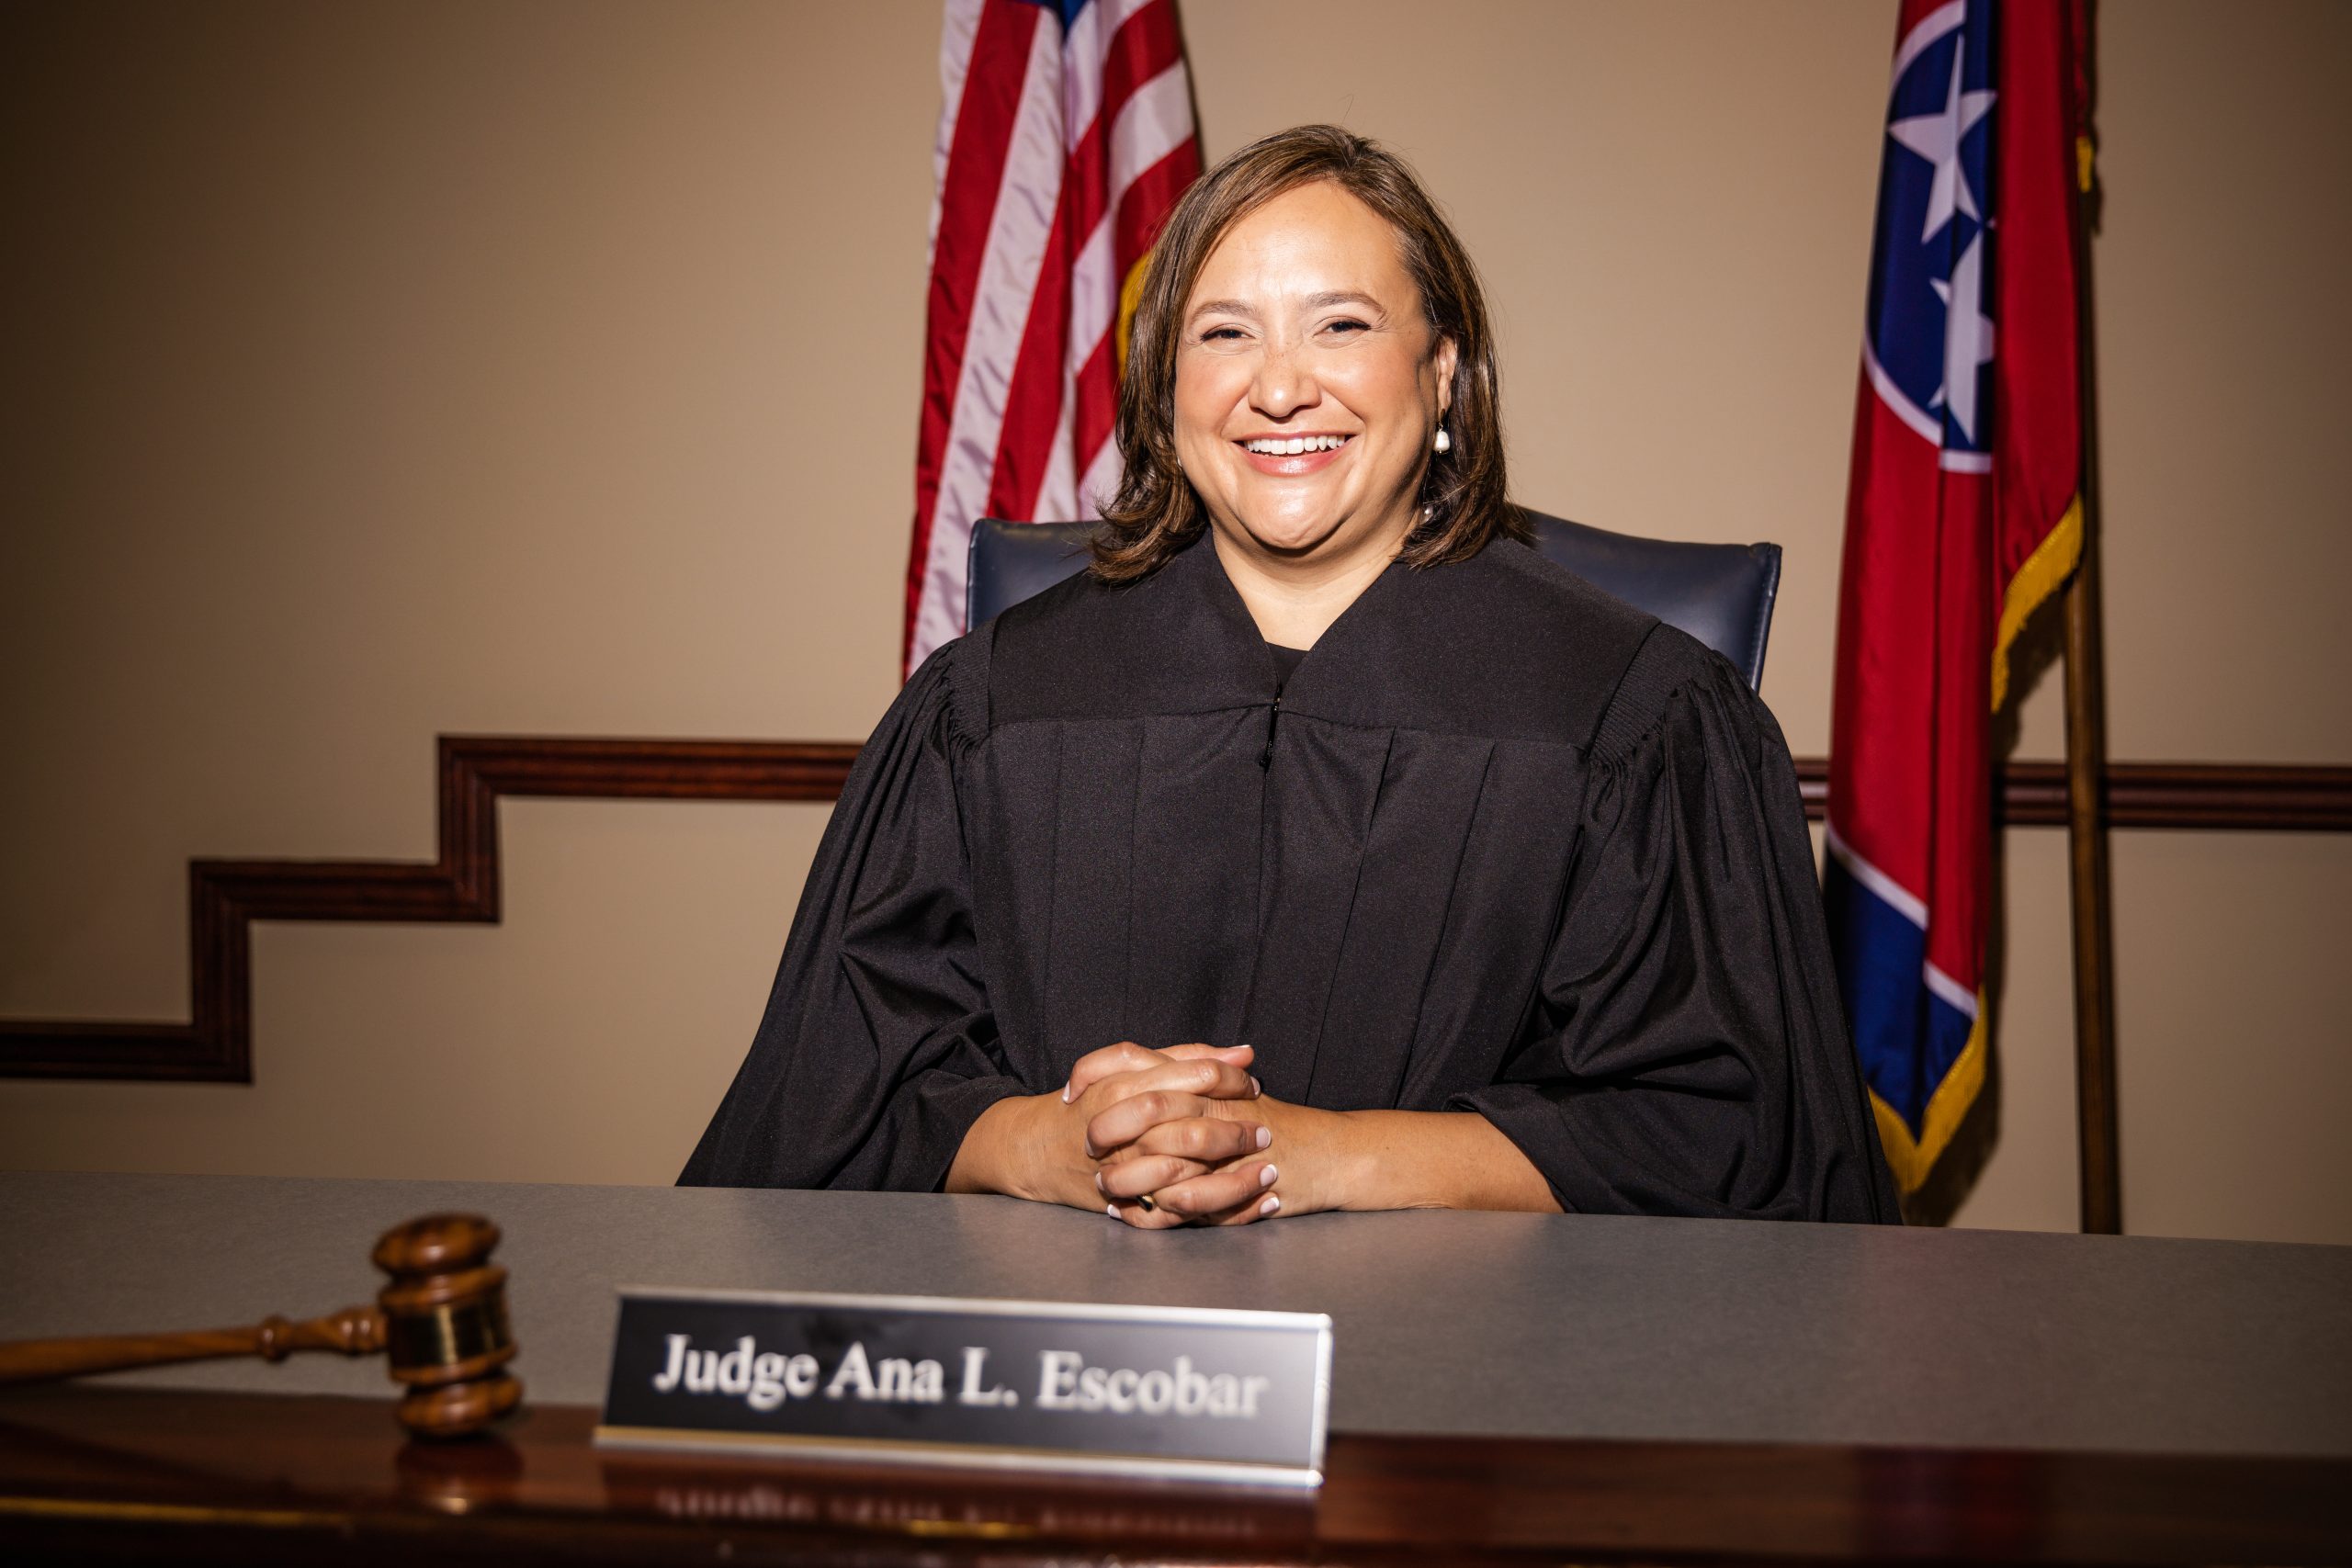 Judge Ana L. Escobar